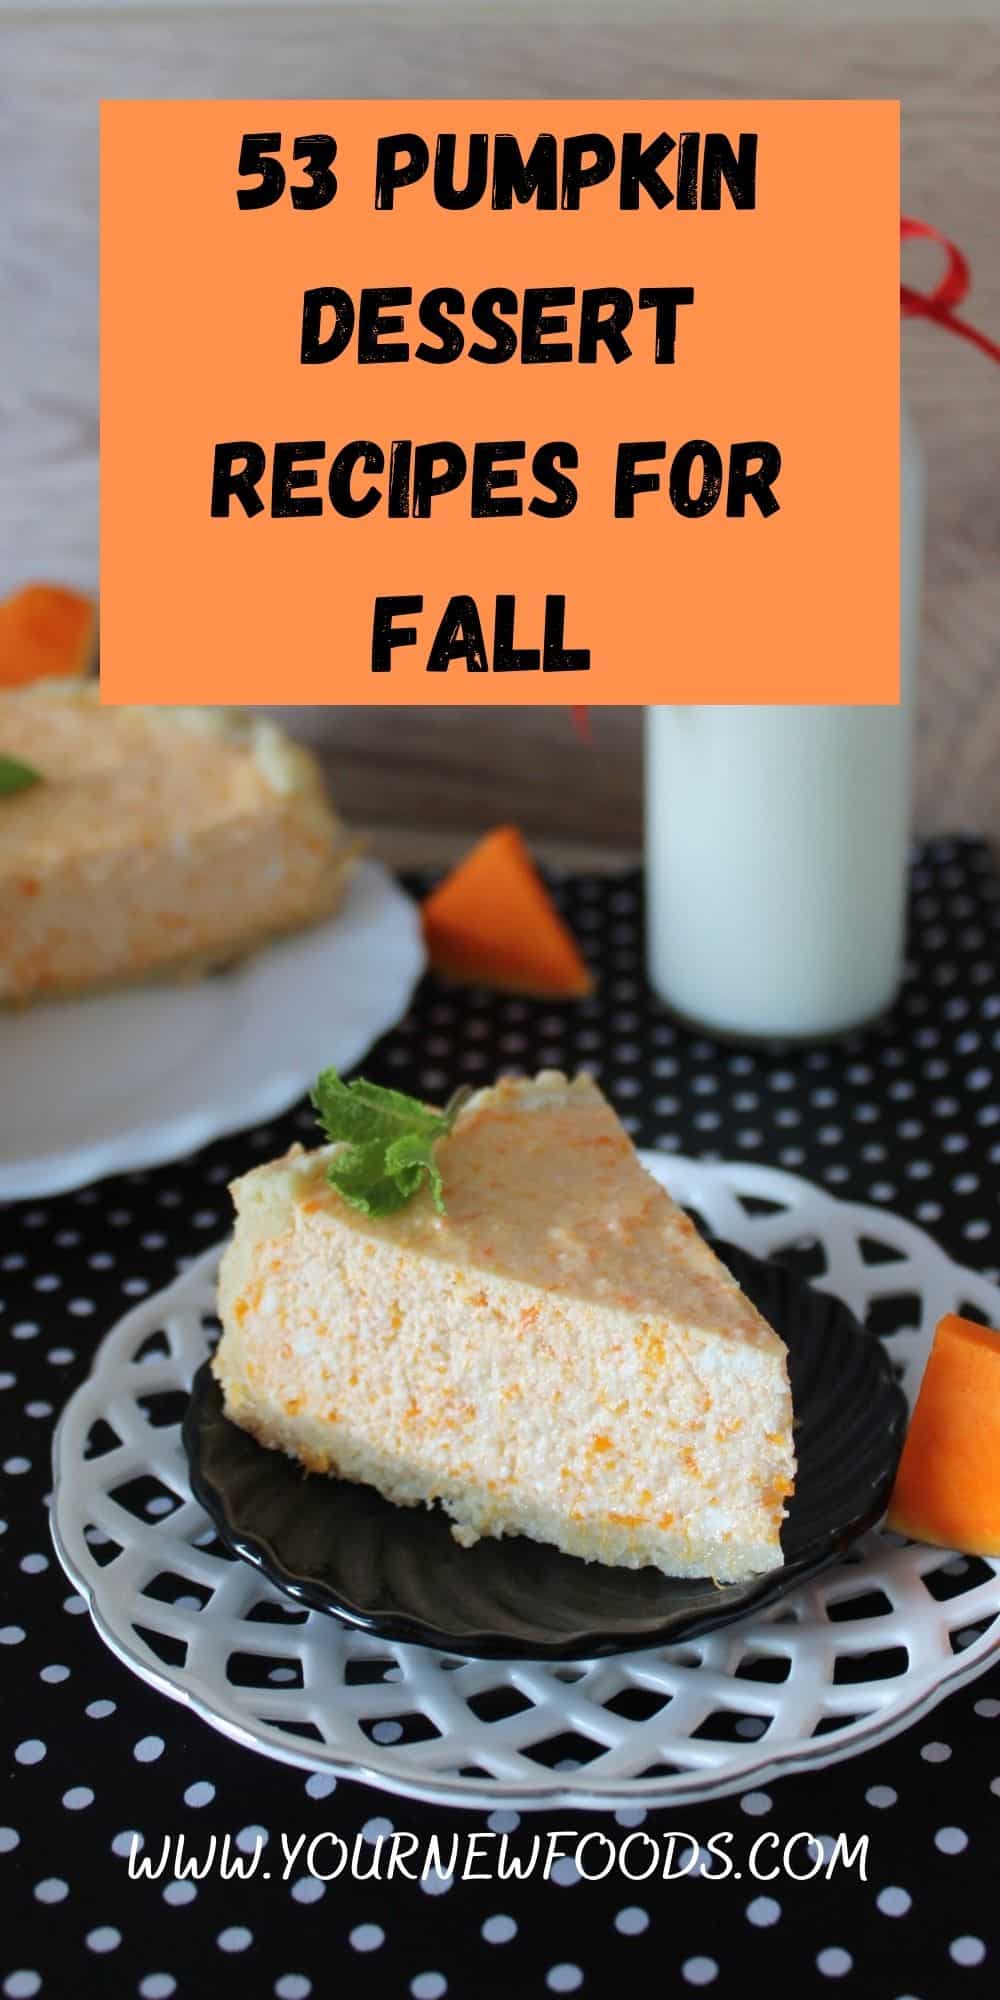 53 Pumpkin Dessert Recipes for Fall